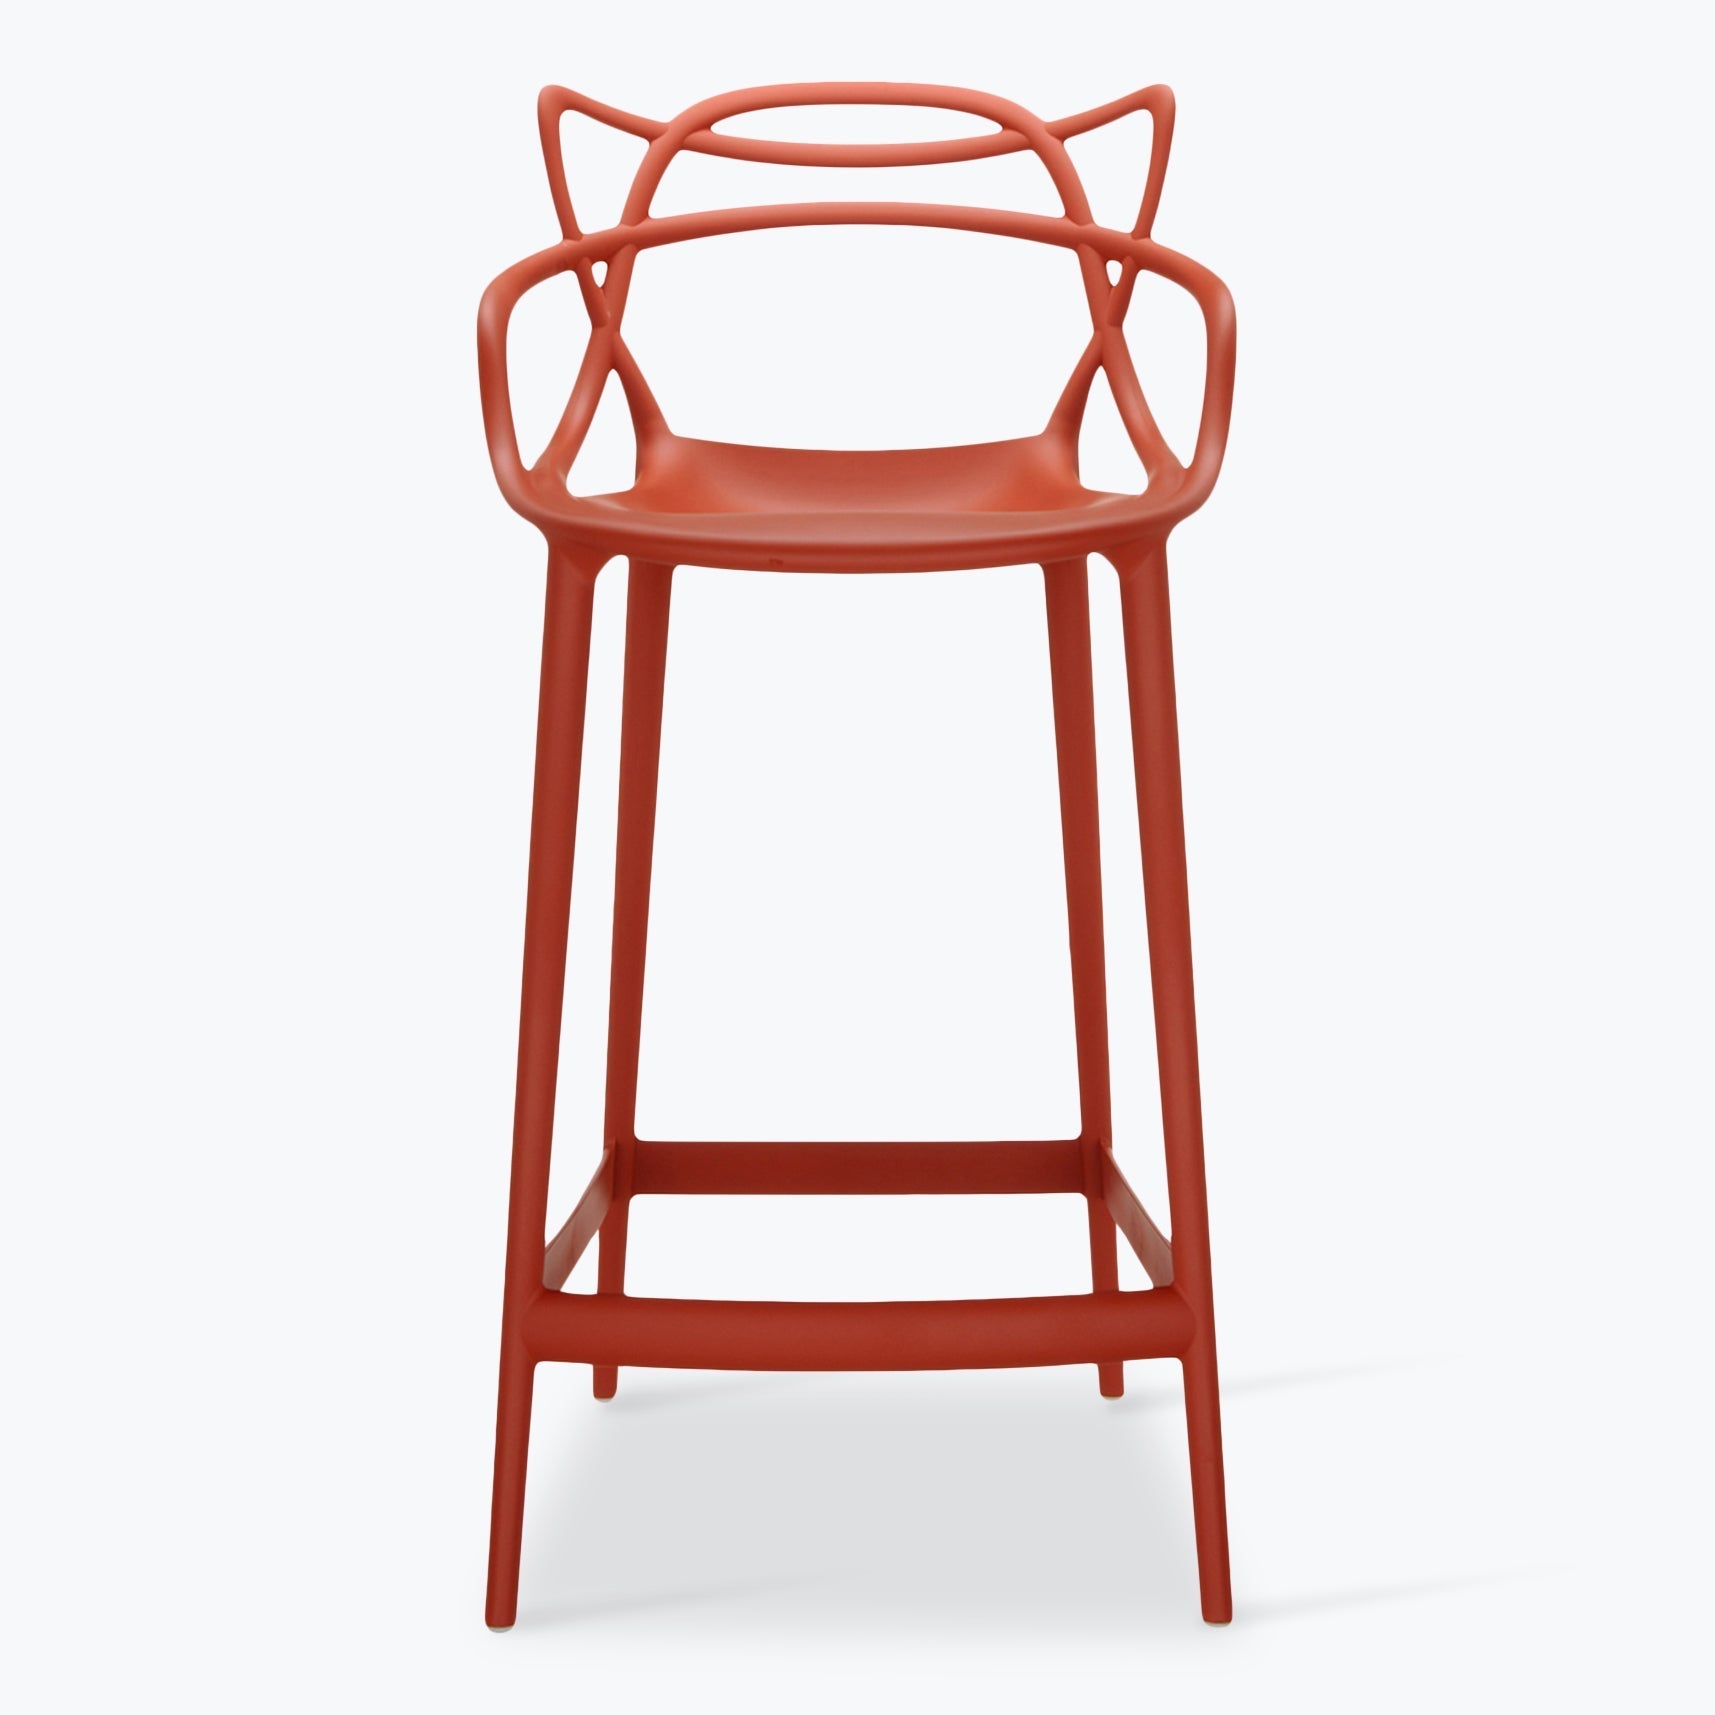 Masters stool H65cm - Carré Lumière